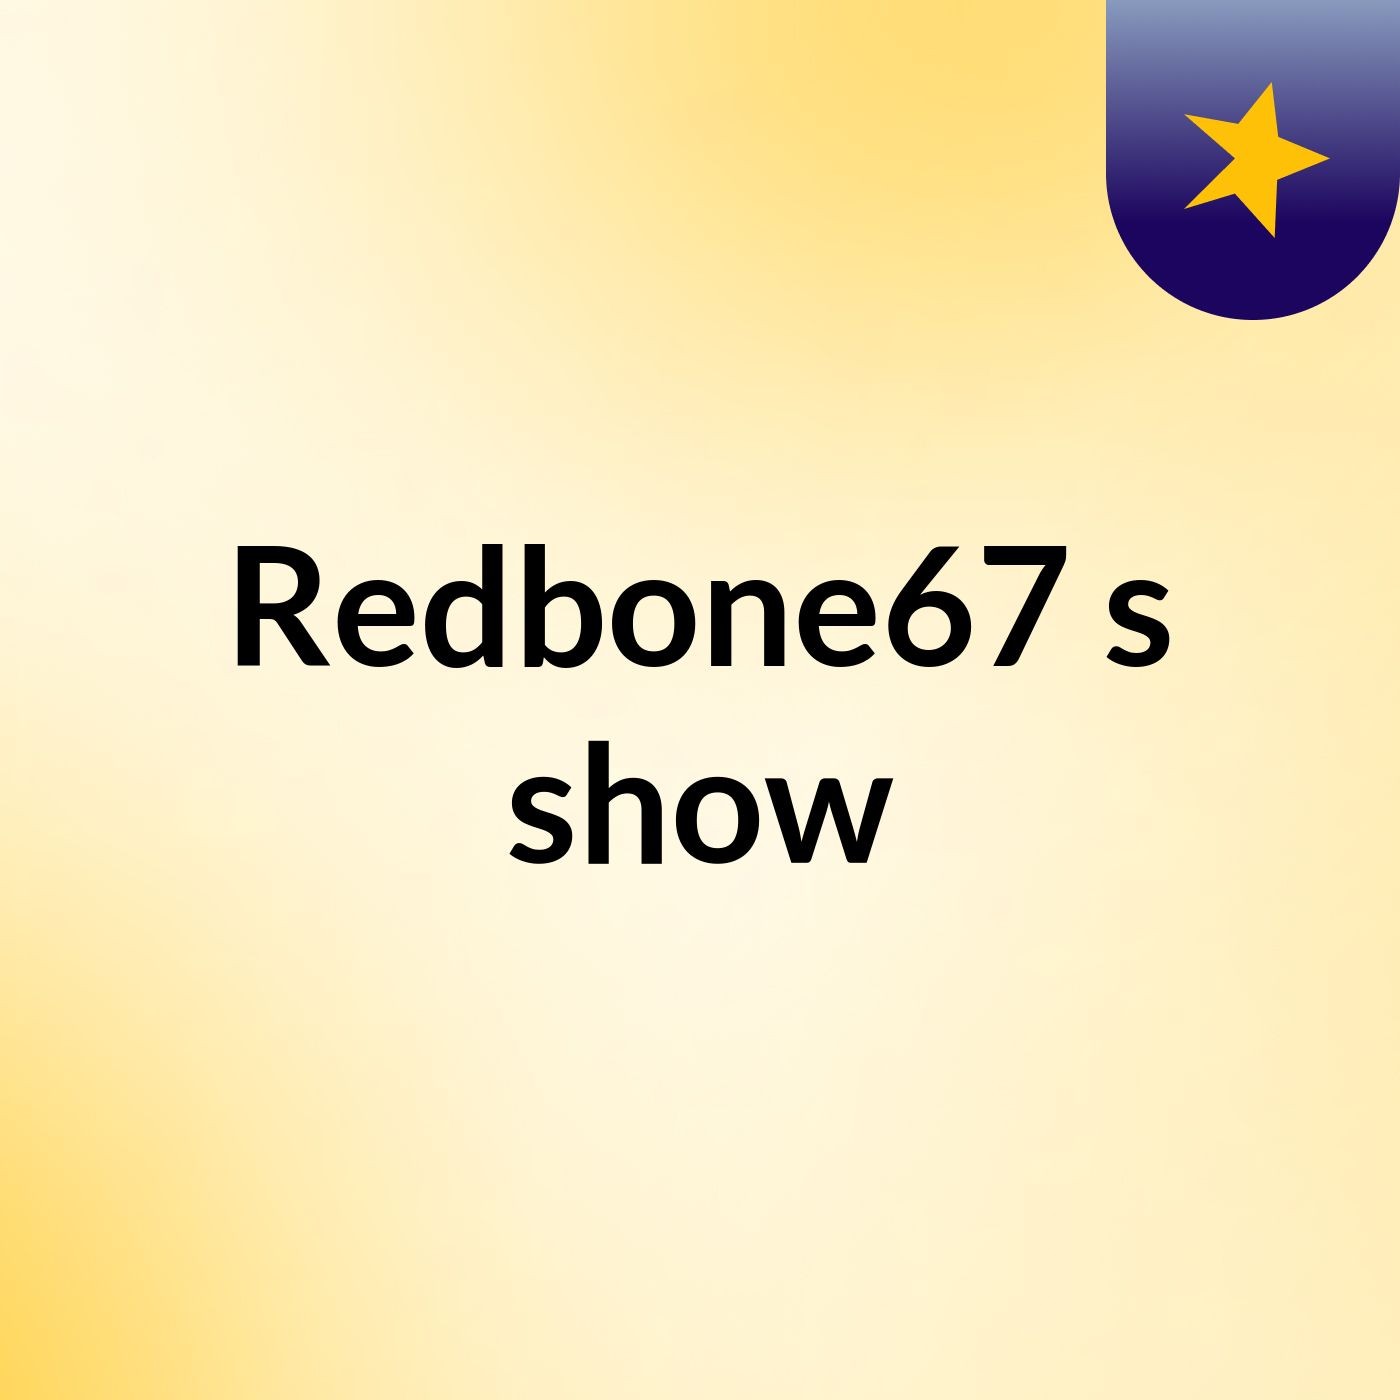 Episode 3 - Redbone67's show